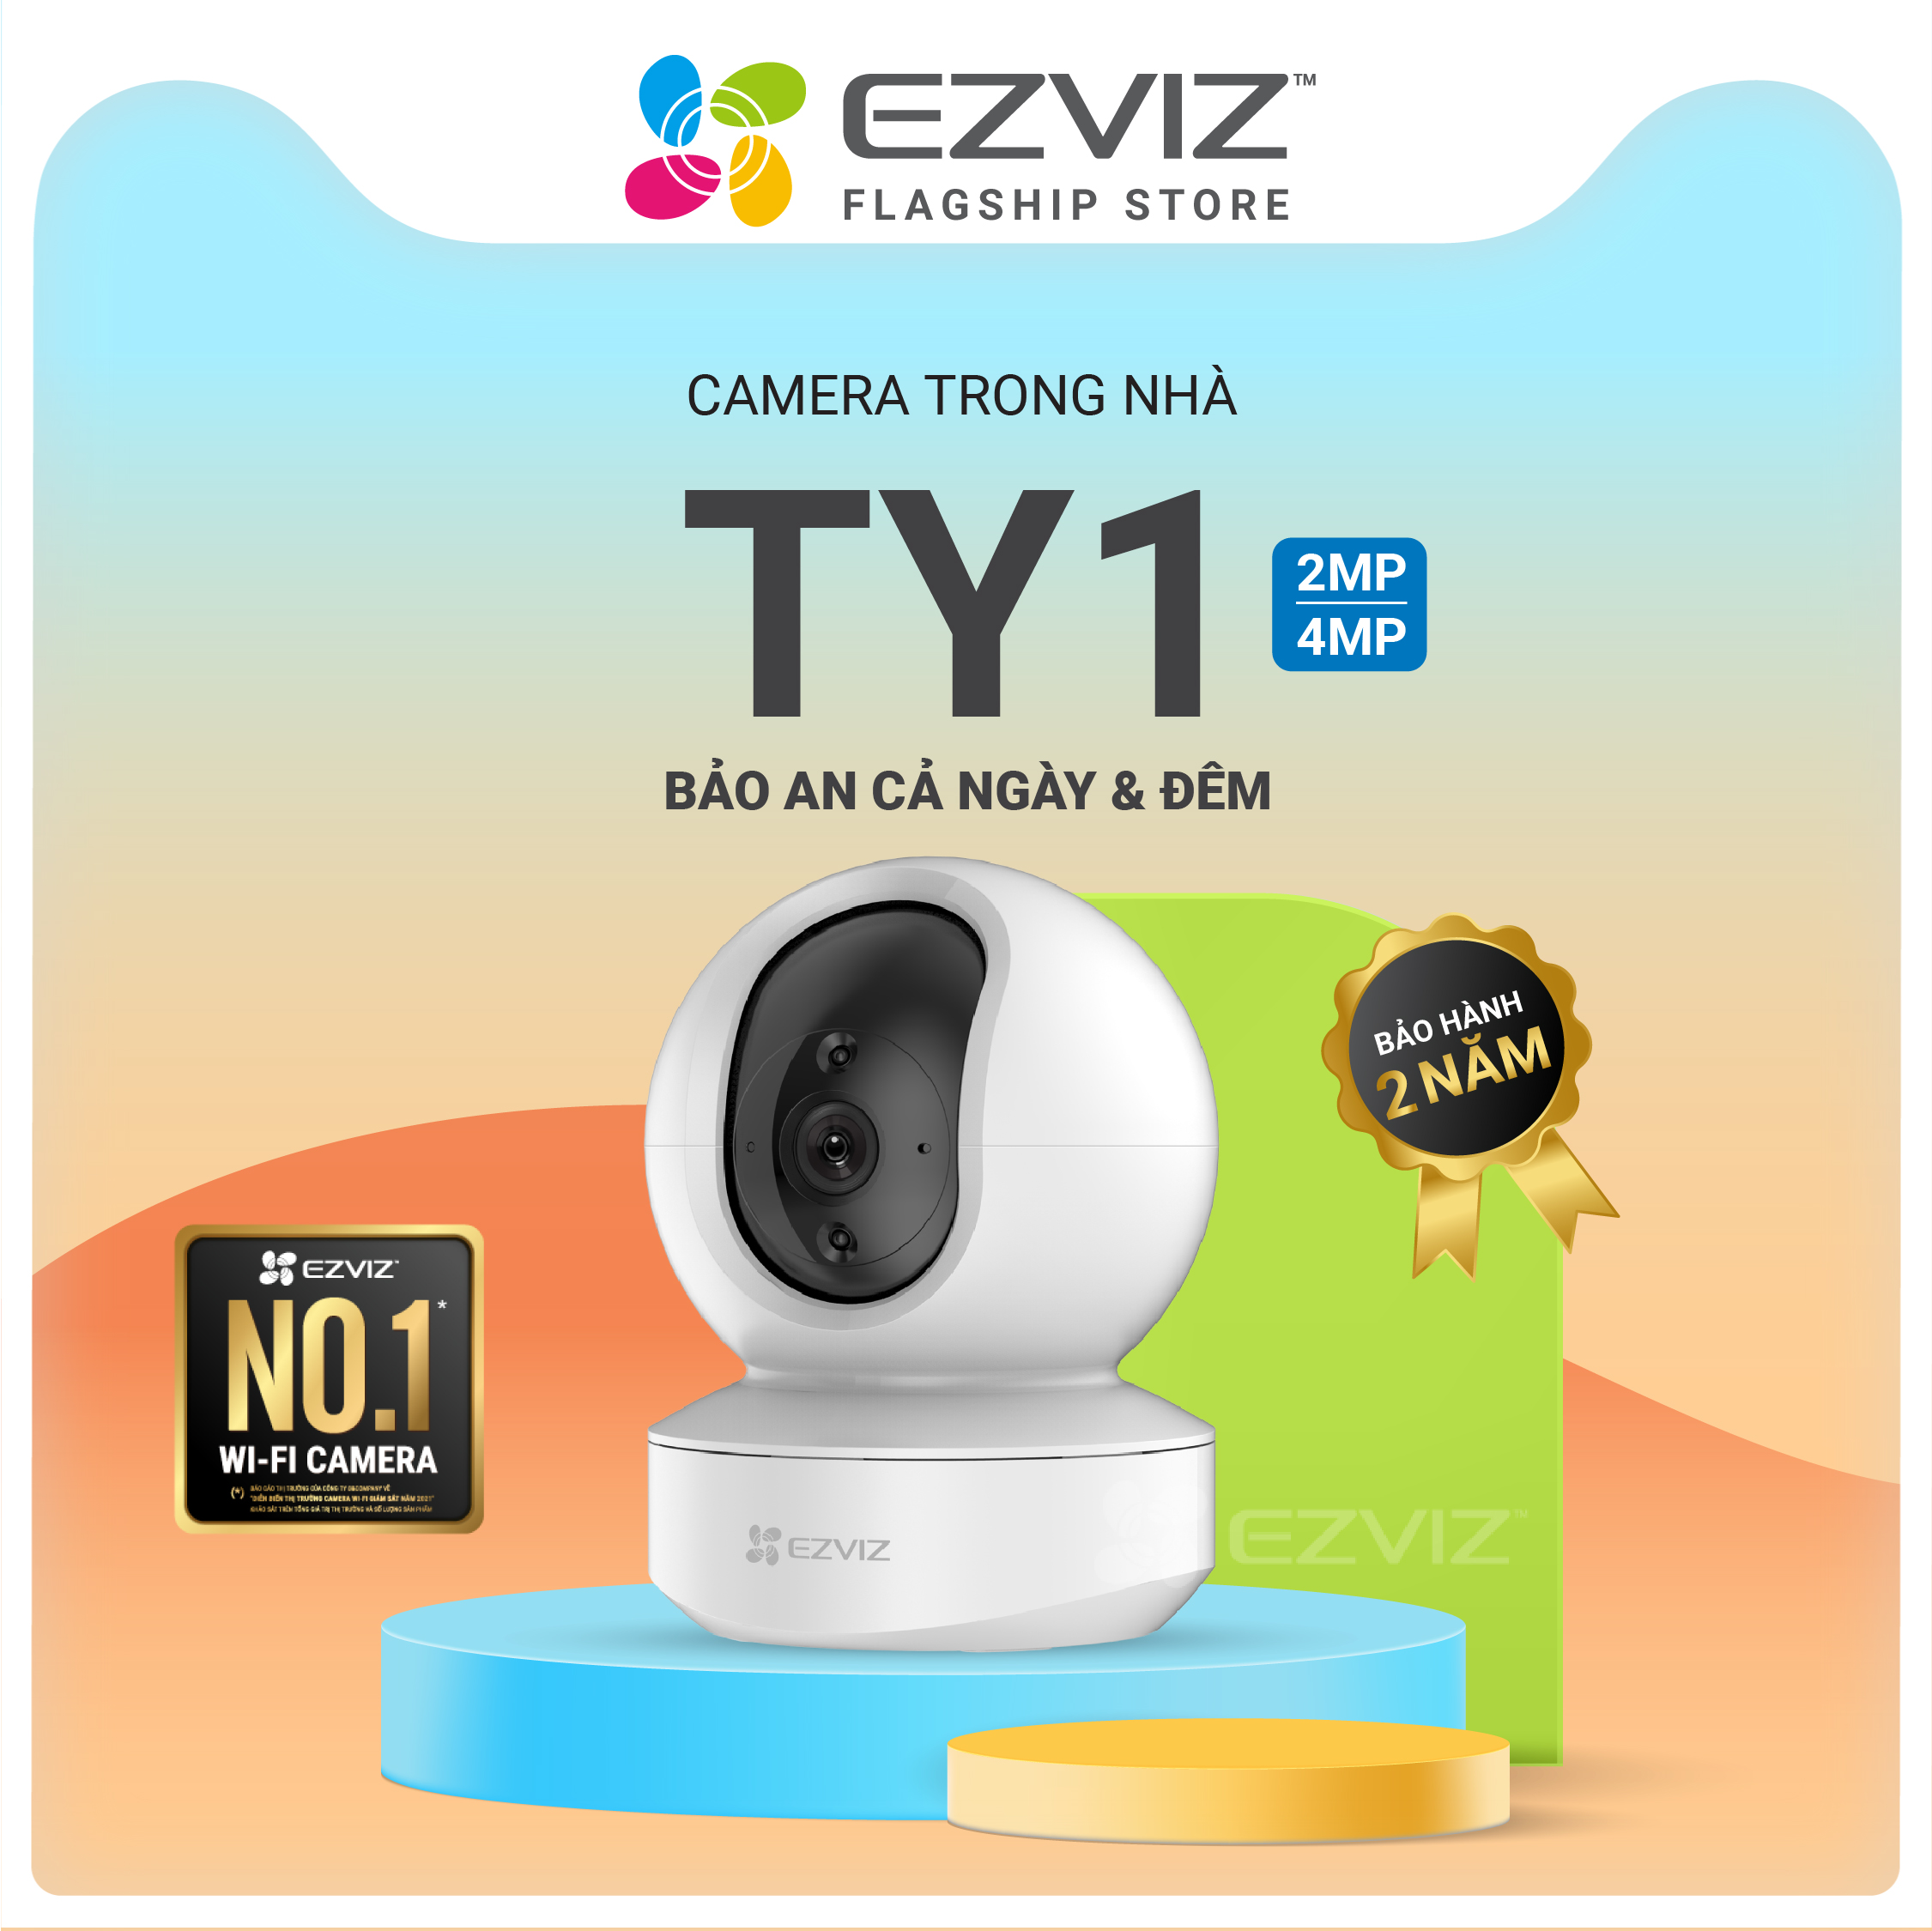 Combo Camera Wi-Fi EZVIZ TY1 FHD 1080p, Trong Nhà, Kèm Thẻ Nhớ  32GB/64GB - Hàng Chính Hãng